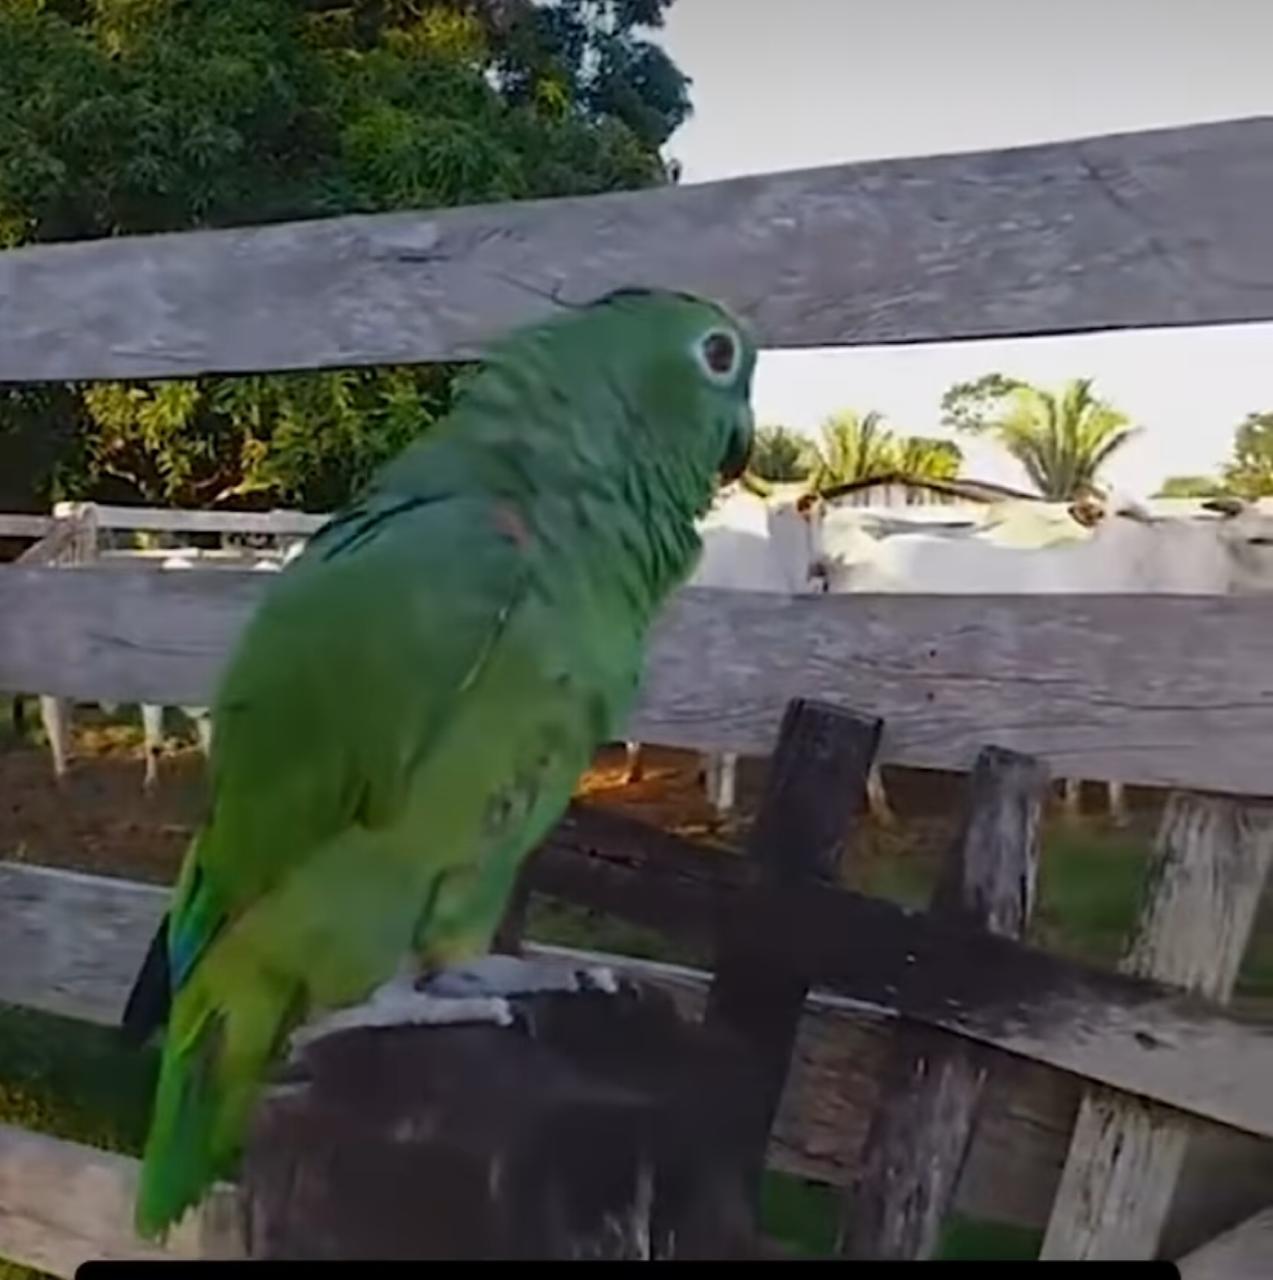 Momento encantador registrado em vídeo viralizado nas redes sociais mostra a inteligência e a versatilidade dos papagaios